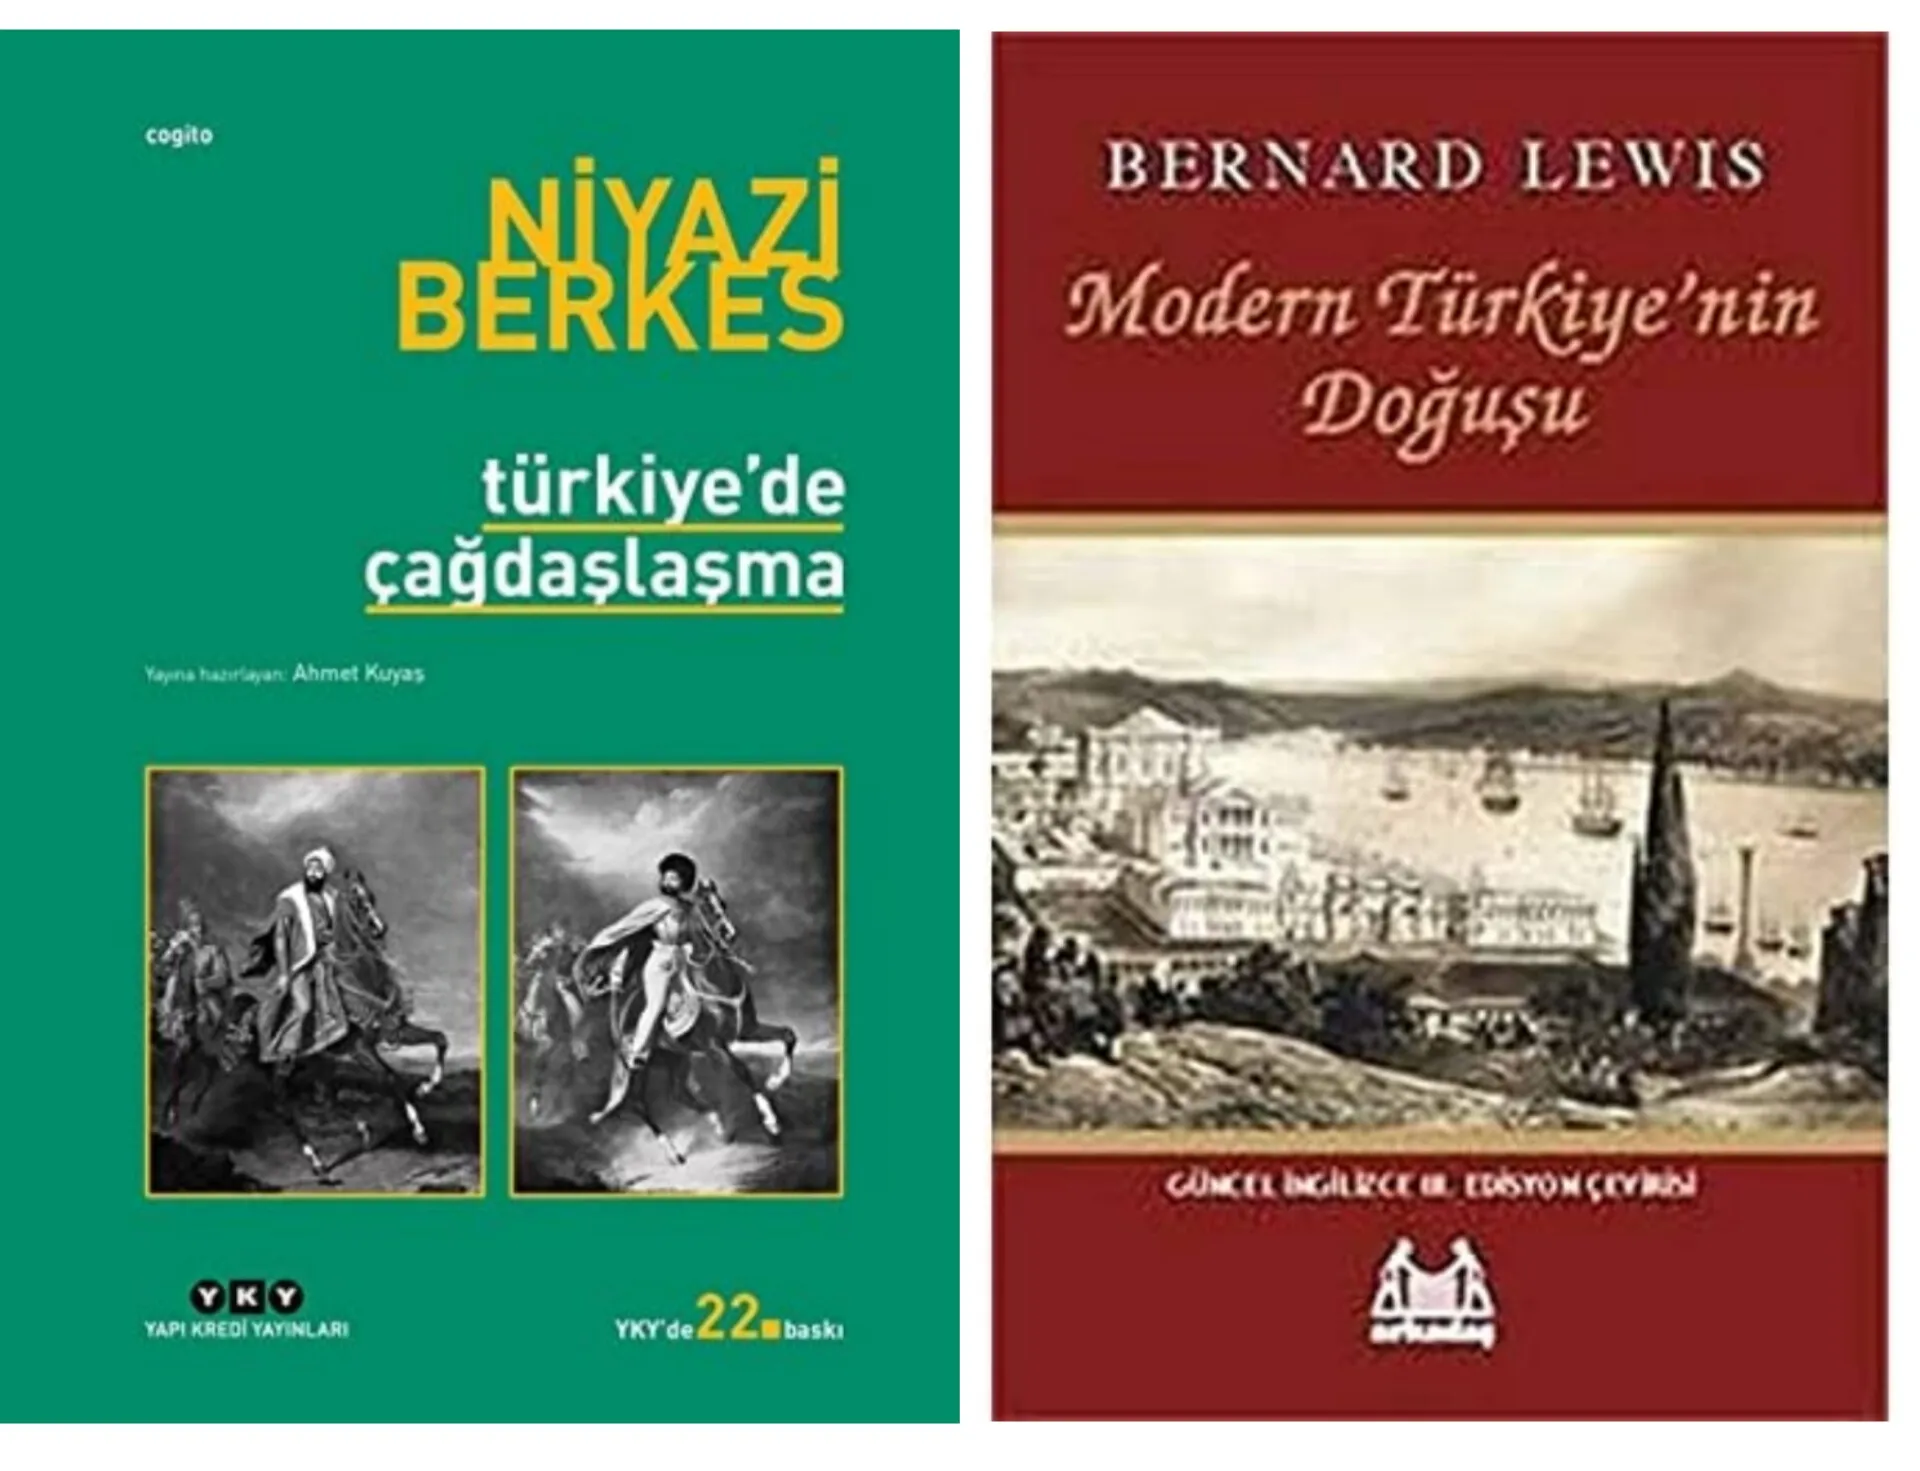 Türkiye'deki Çağdaşlaşma Sürecinin Berkes ve Lewis'in Görüşleri Doğrultusunda İncelenmesi